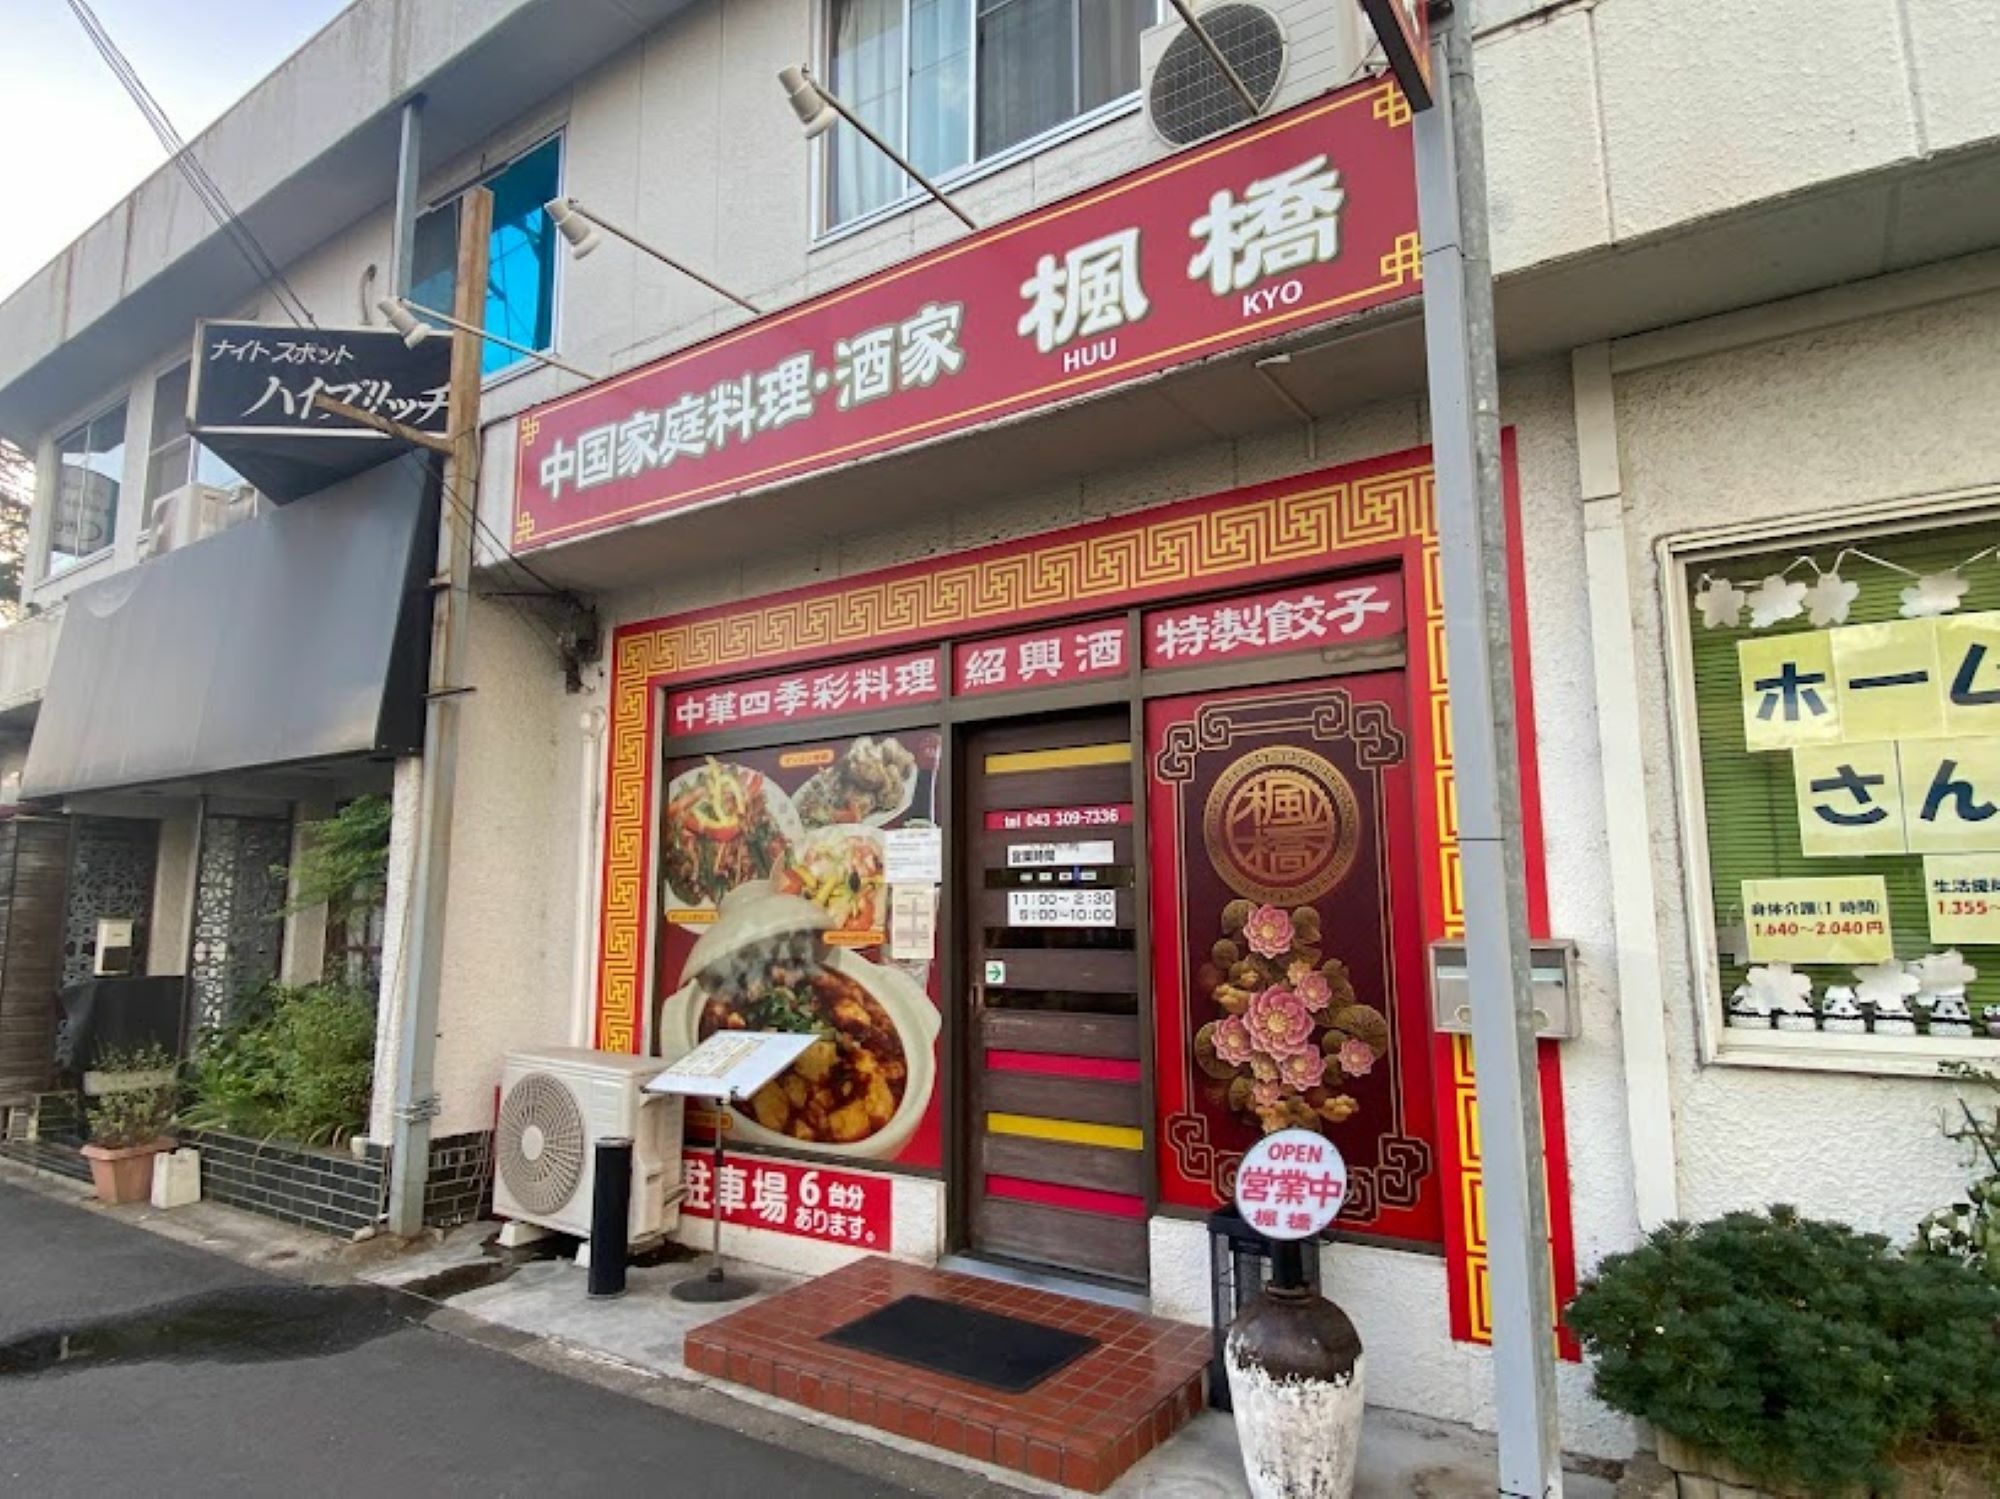 中華料理店らしい入口が目印です。